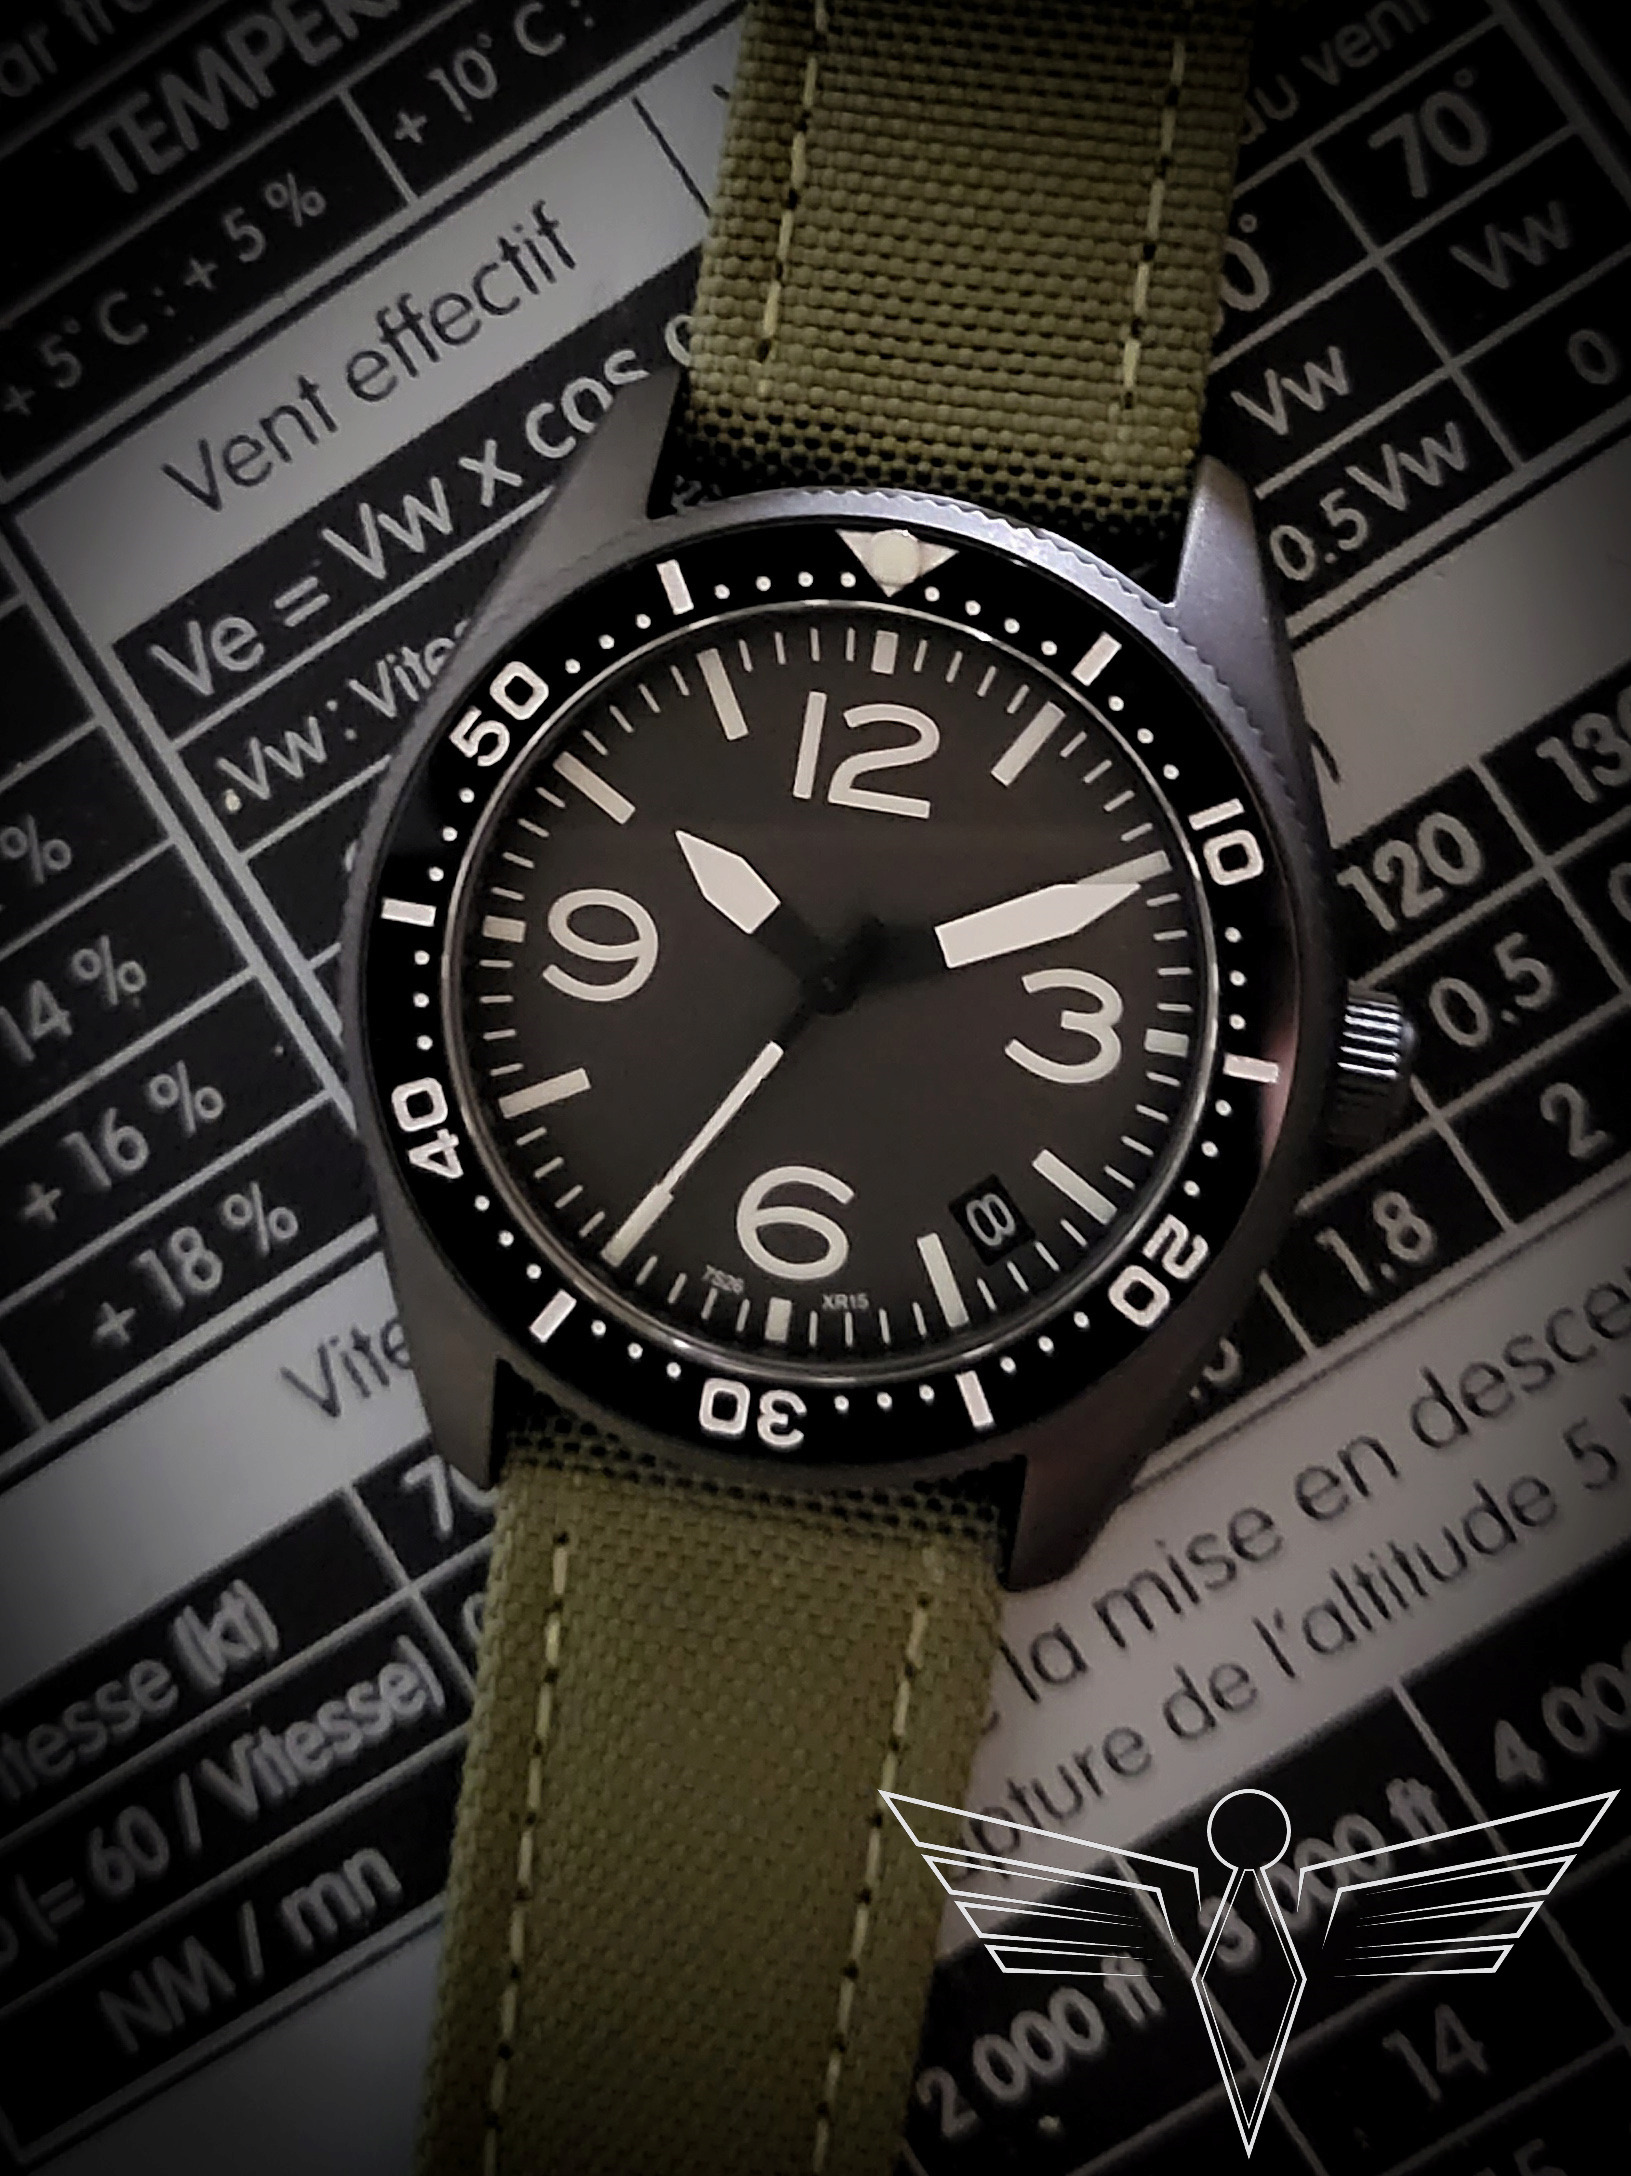 Feu de vos montres d'aviateur, ou inspirées du monde aéronautique - Page 22 20211213